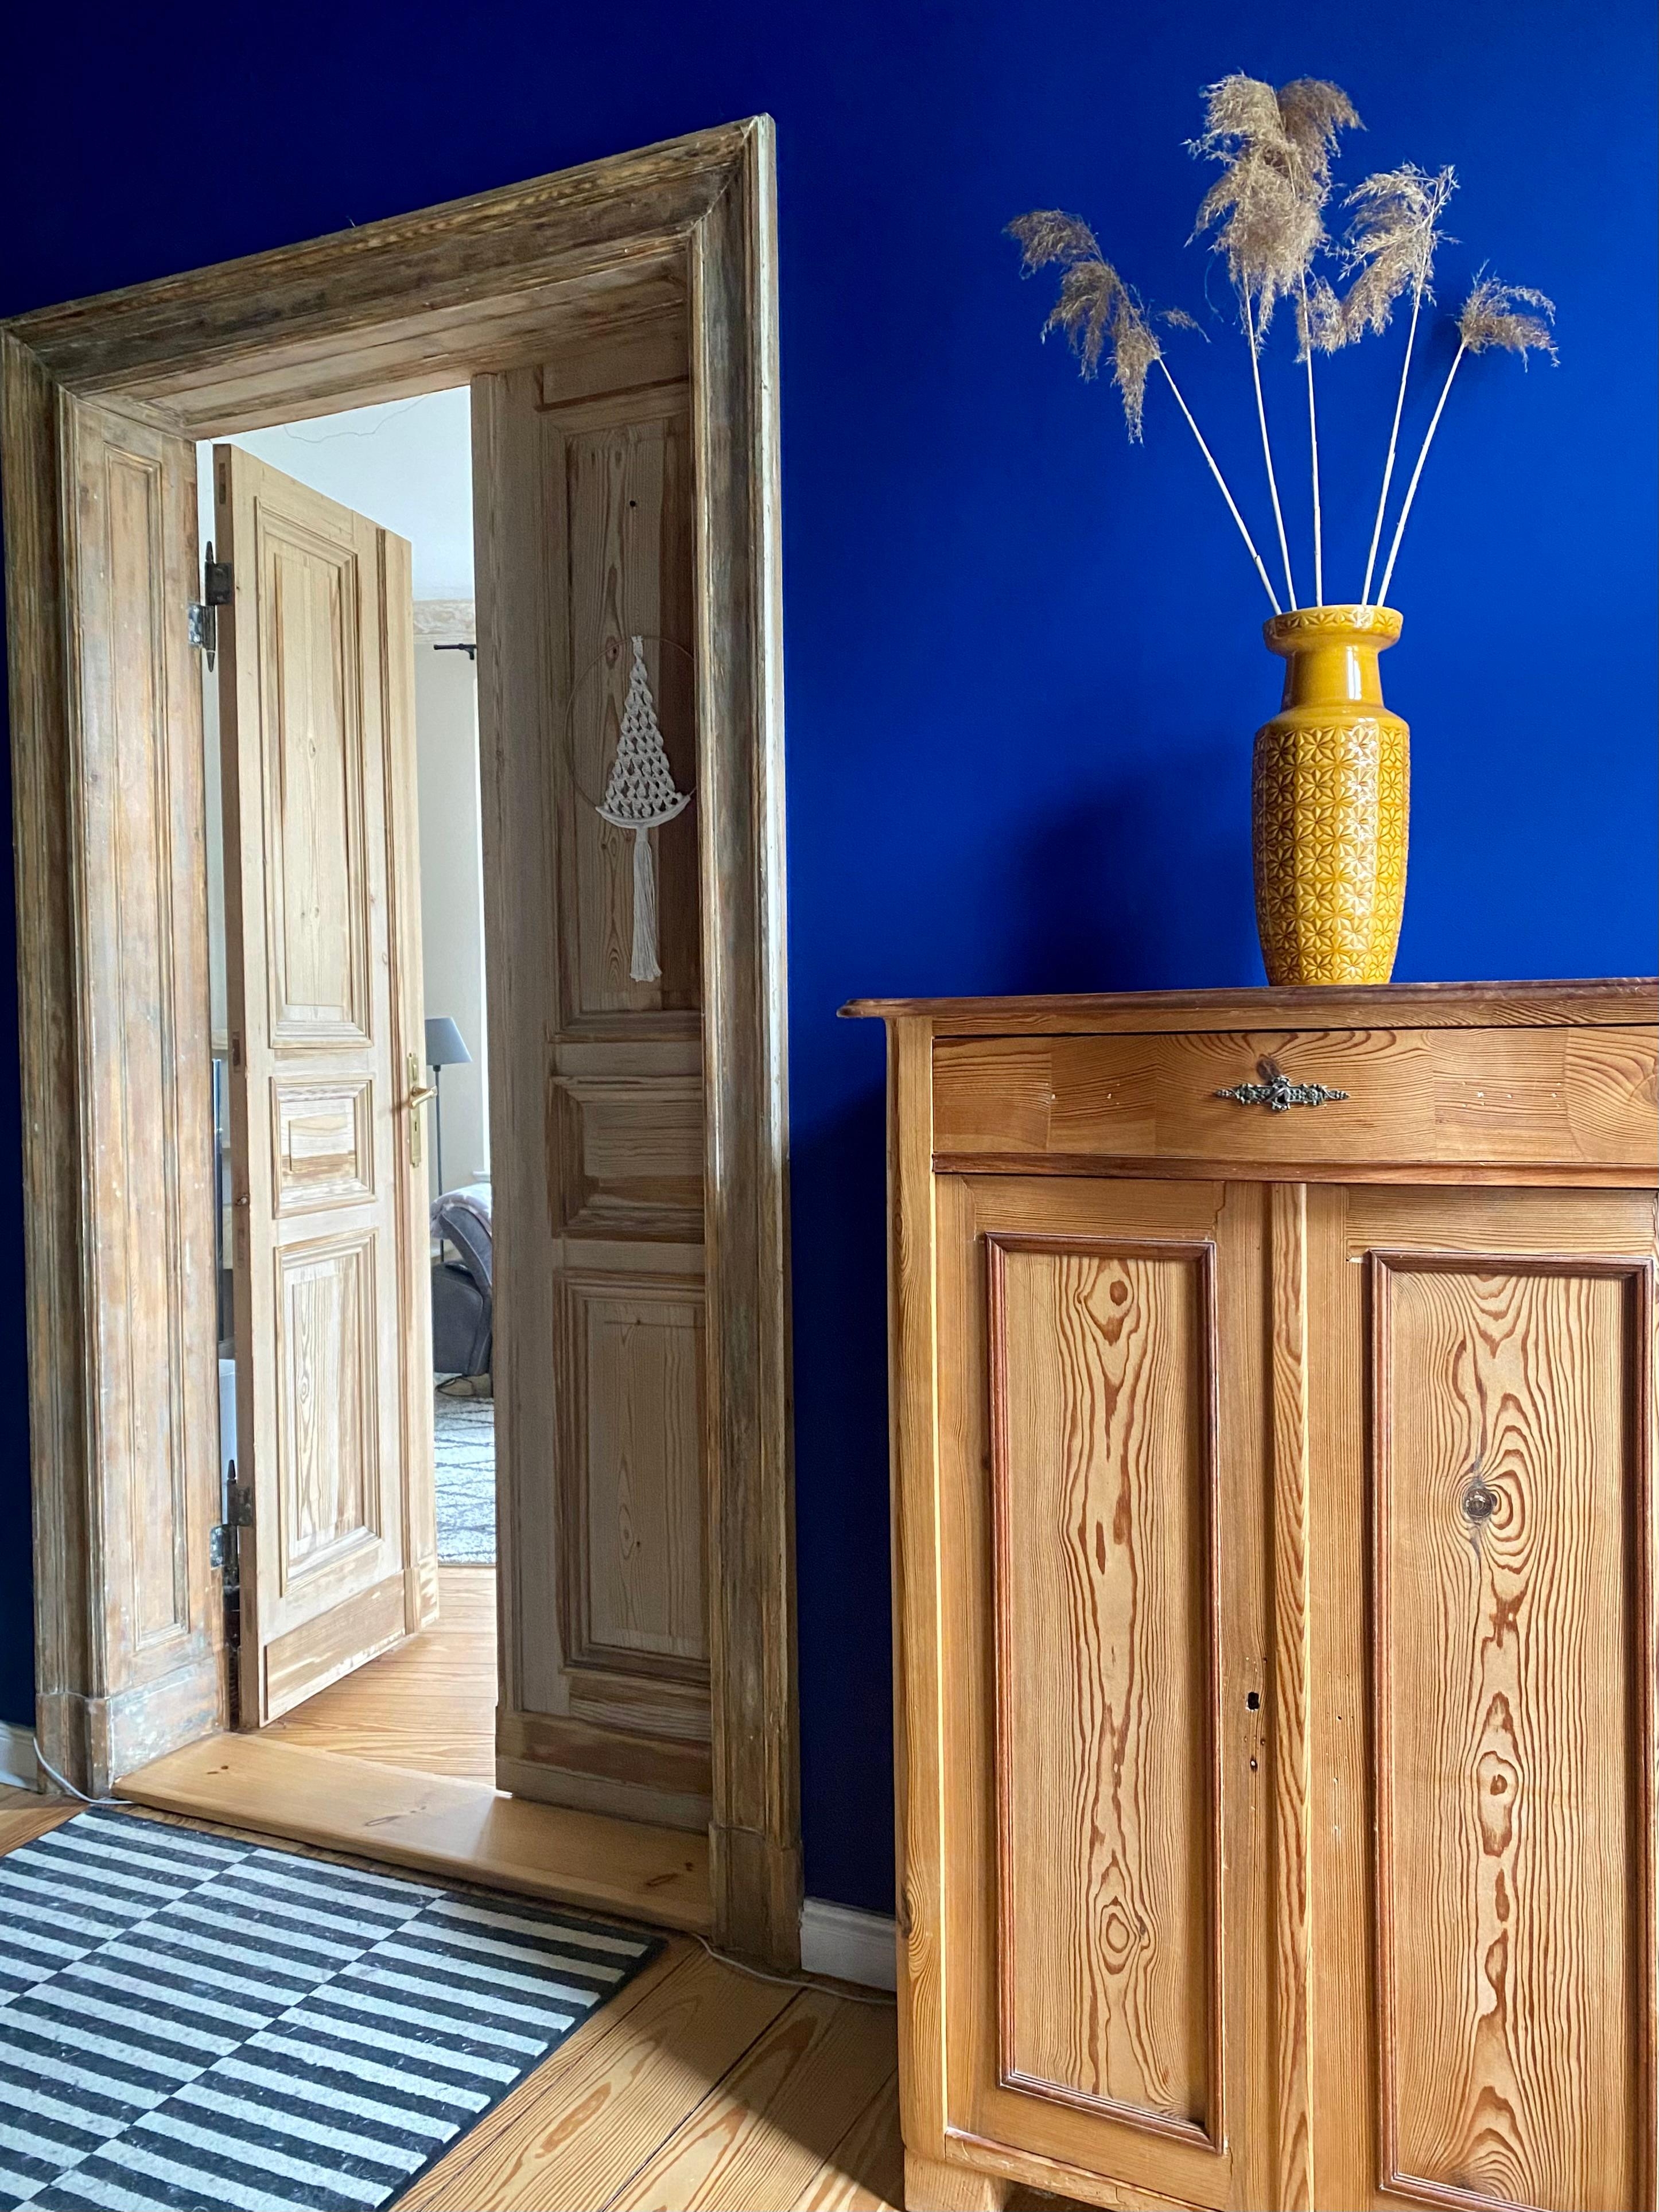 Mein blauer Salon 💙
#altbauliebe #farbenfroh